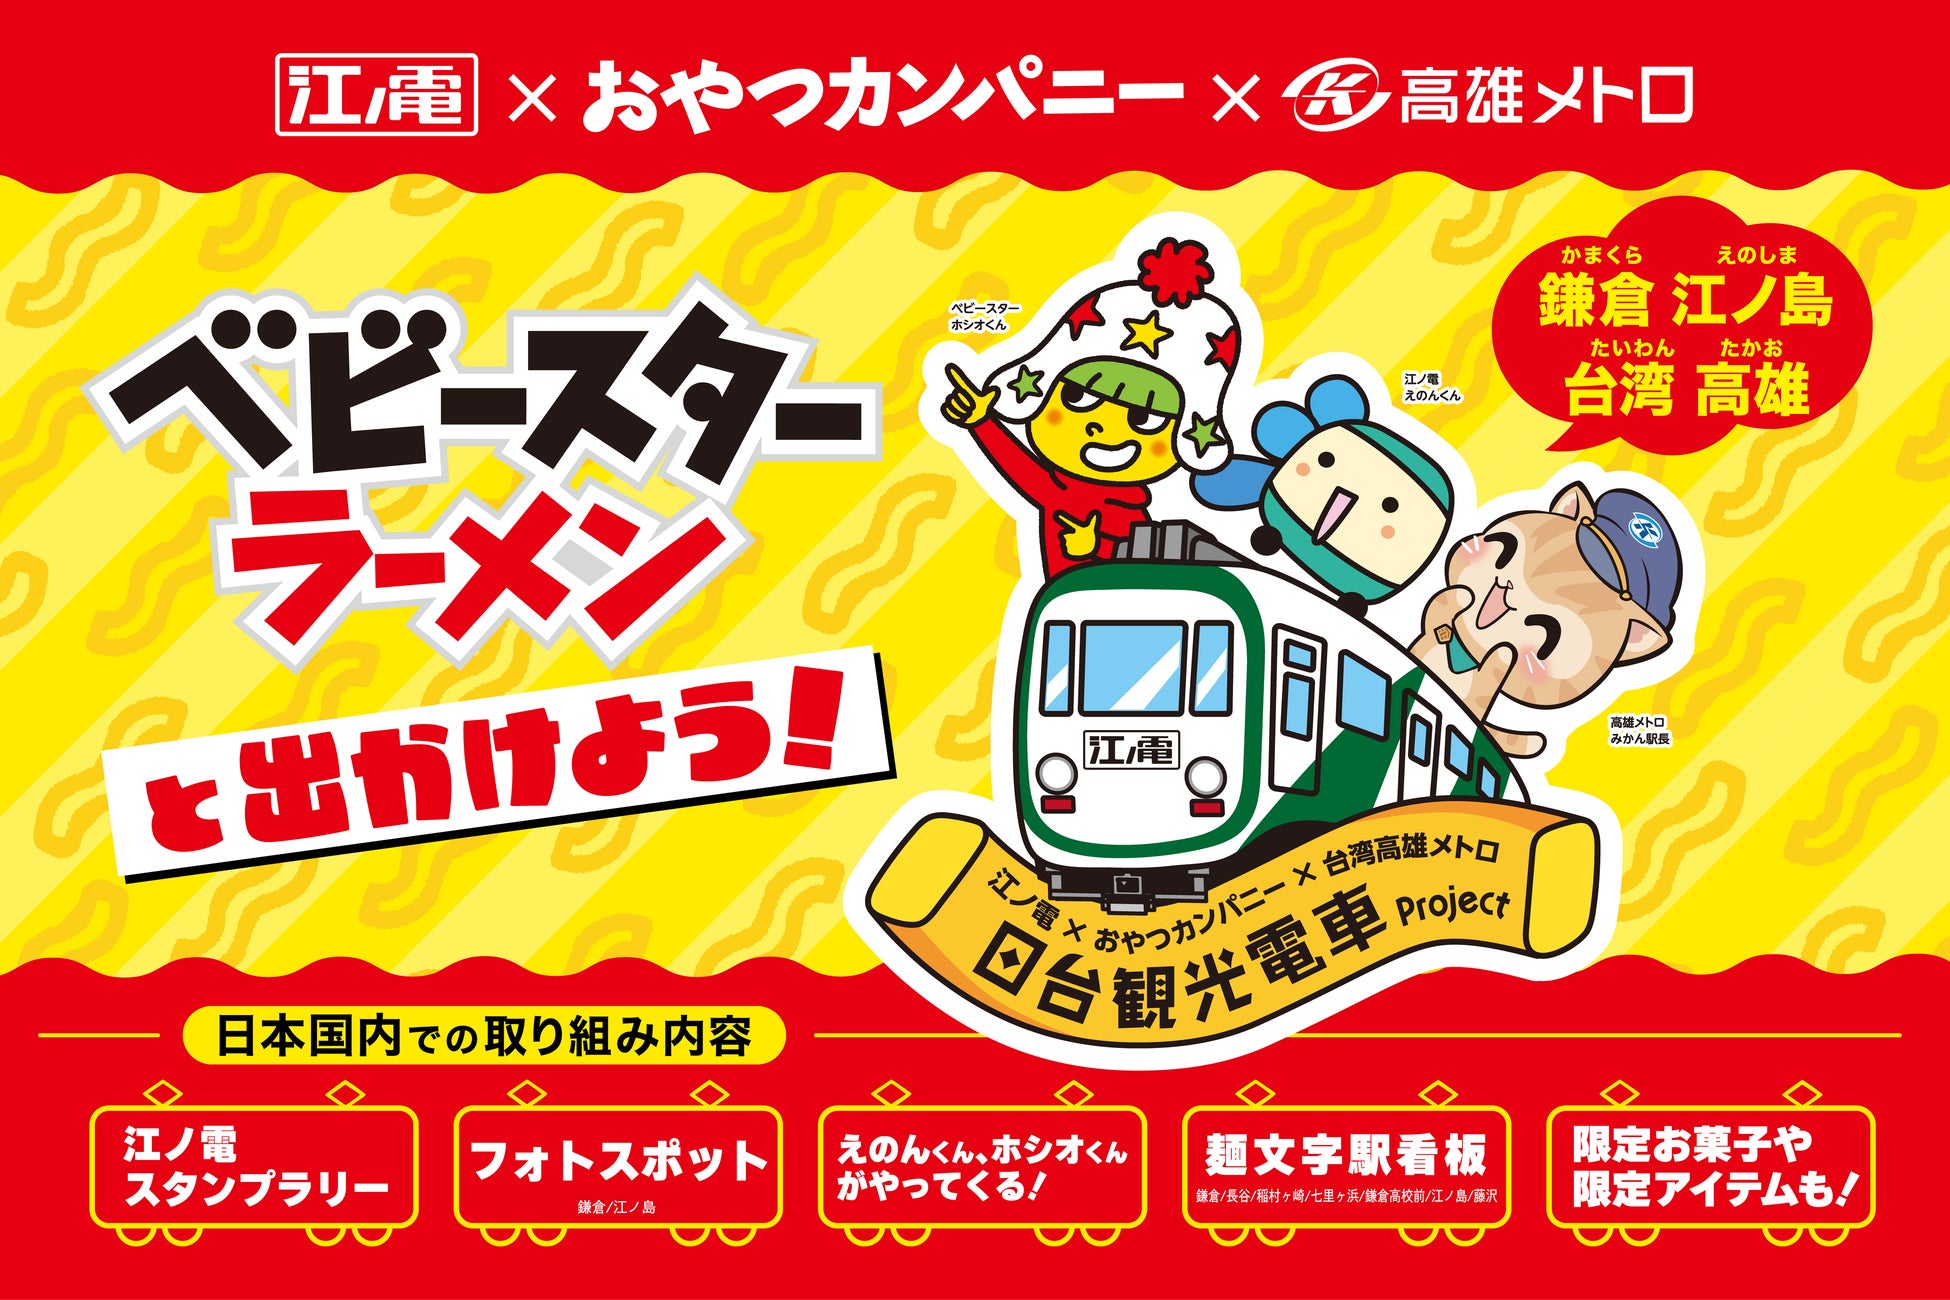 日本にも台湾にもベビースター⁉遊びゴコロあふれる特別車両で素敵な旅の想い出を。「日台観光電車プロジェクト」いよいよ始動！